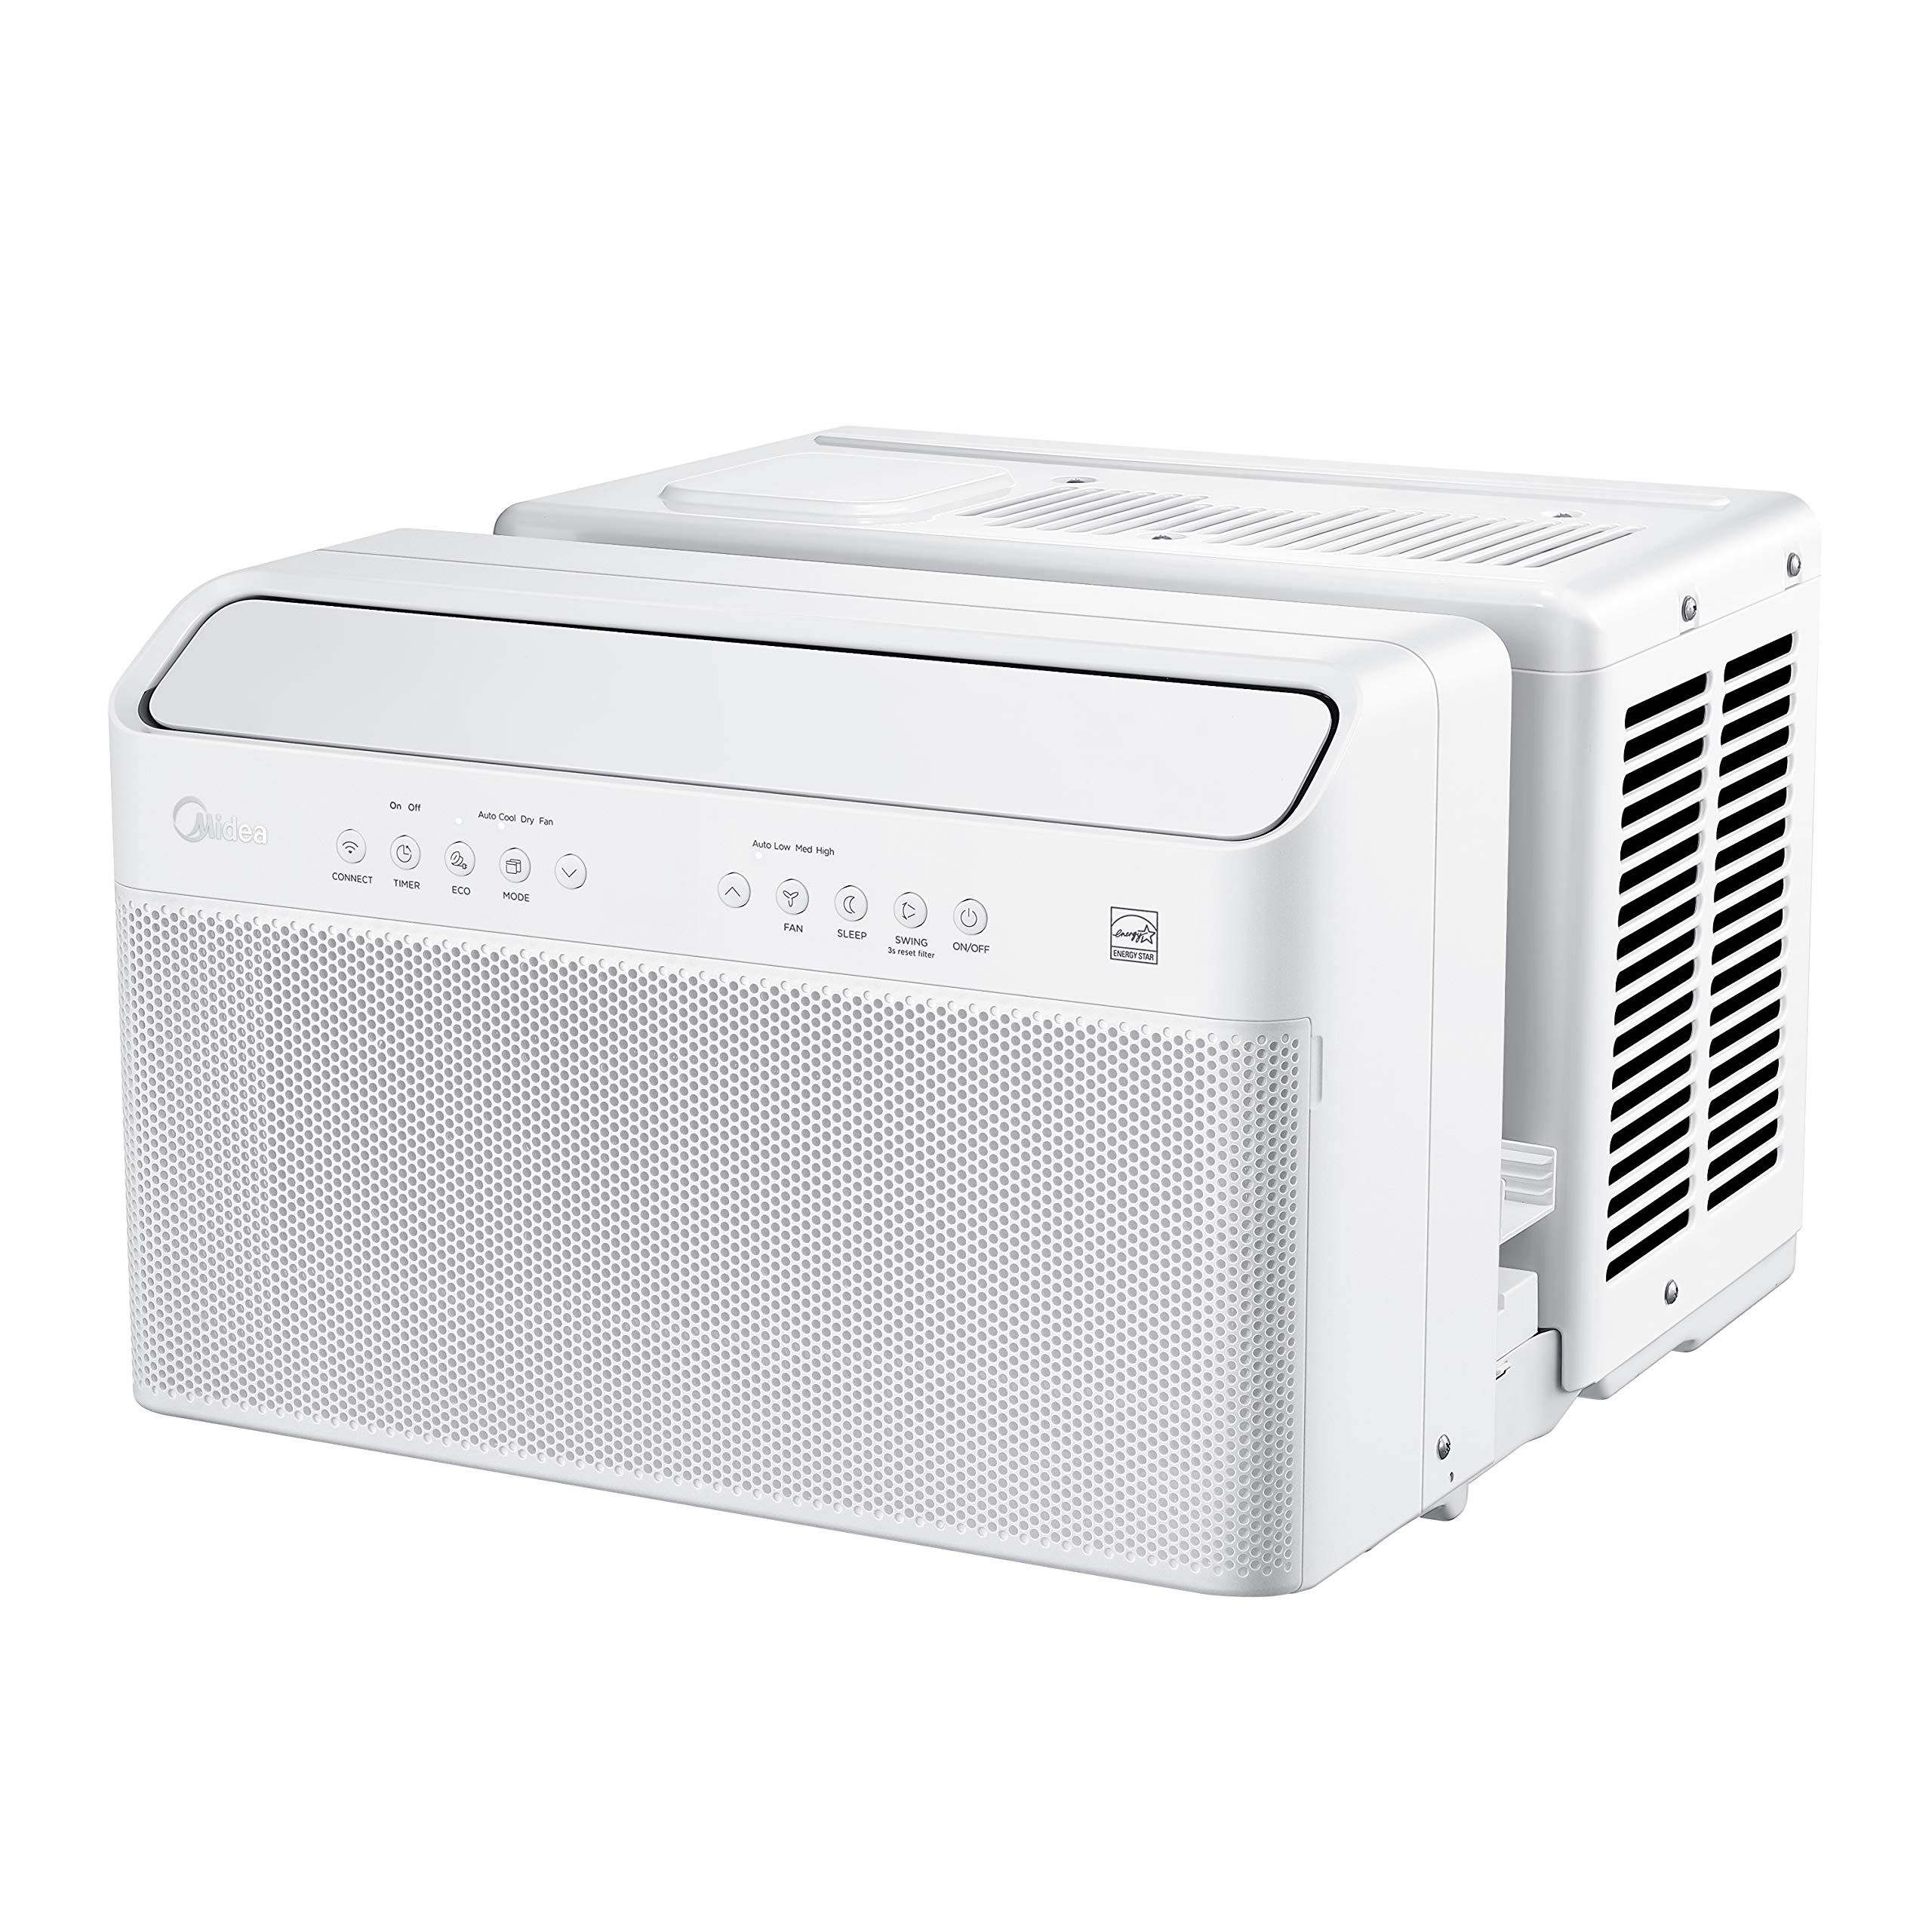 Midea U Inverter Window Air Conditioner 12,000BTU $390 $389.99 at Amazon